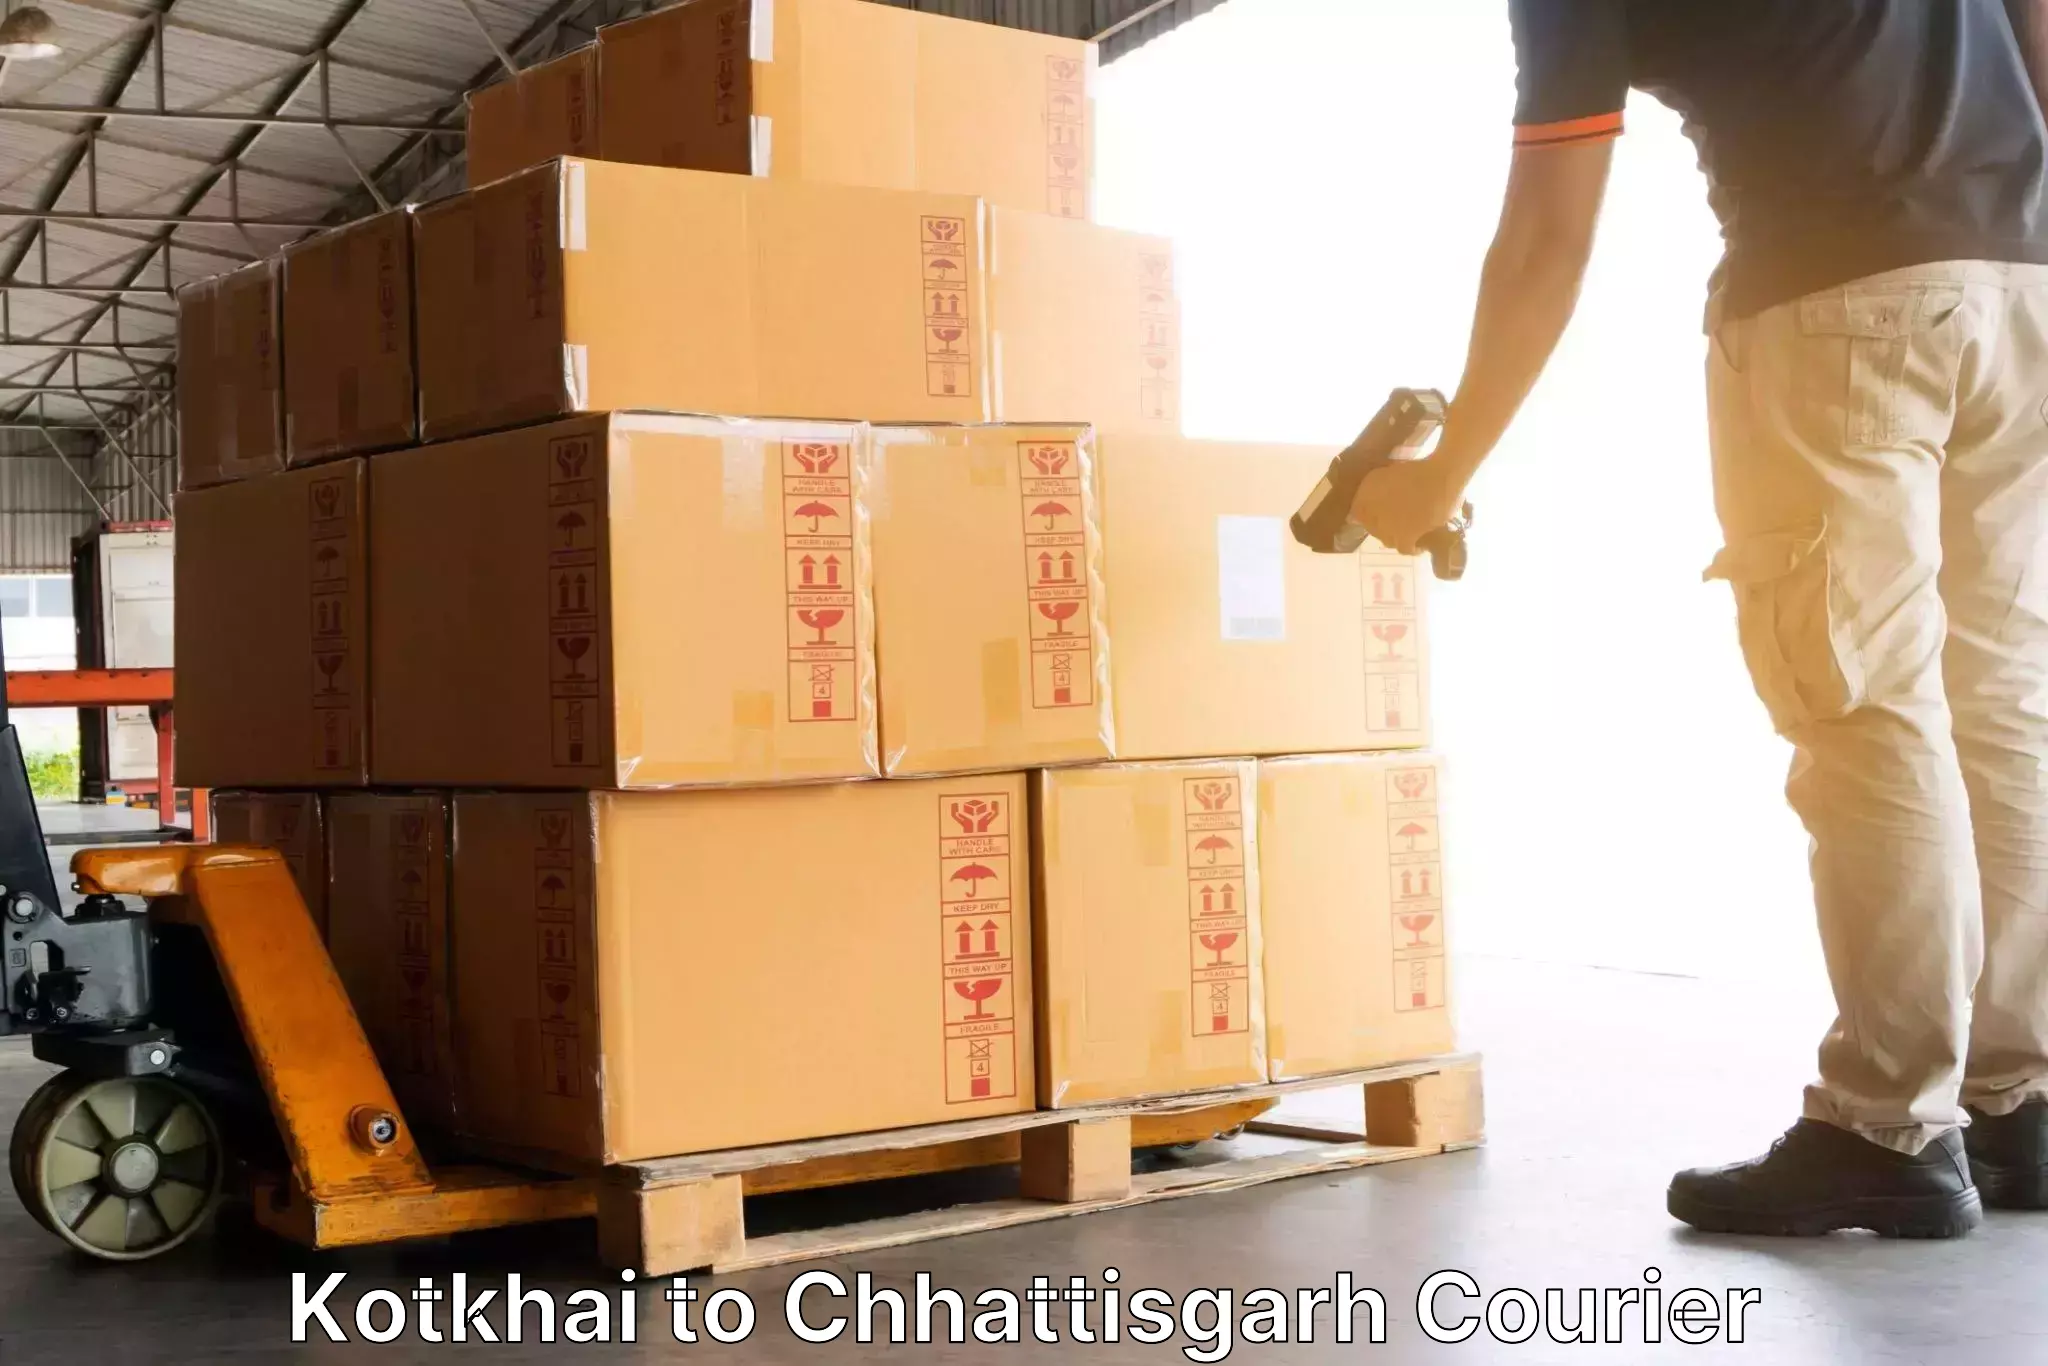 Nationwide delivery network Kotkhai to Tilda